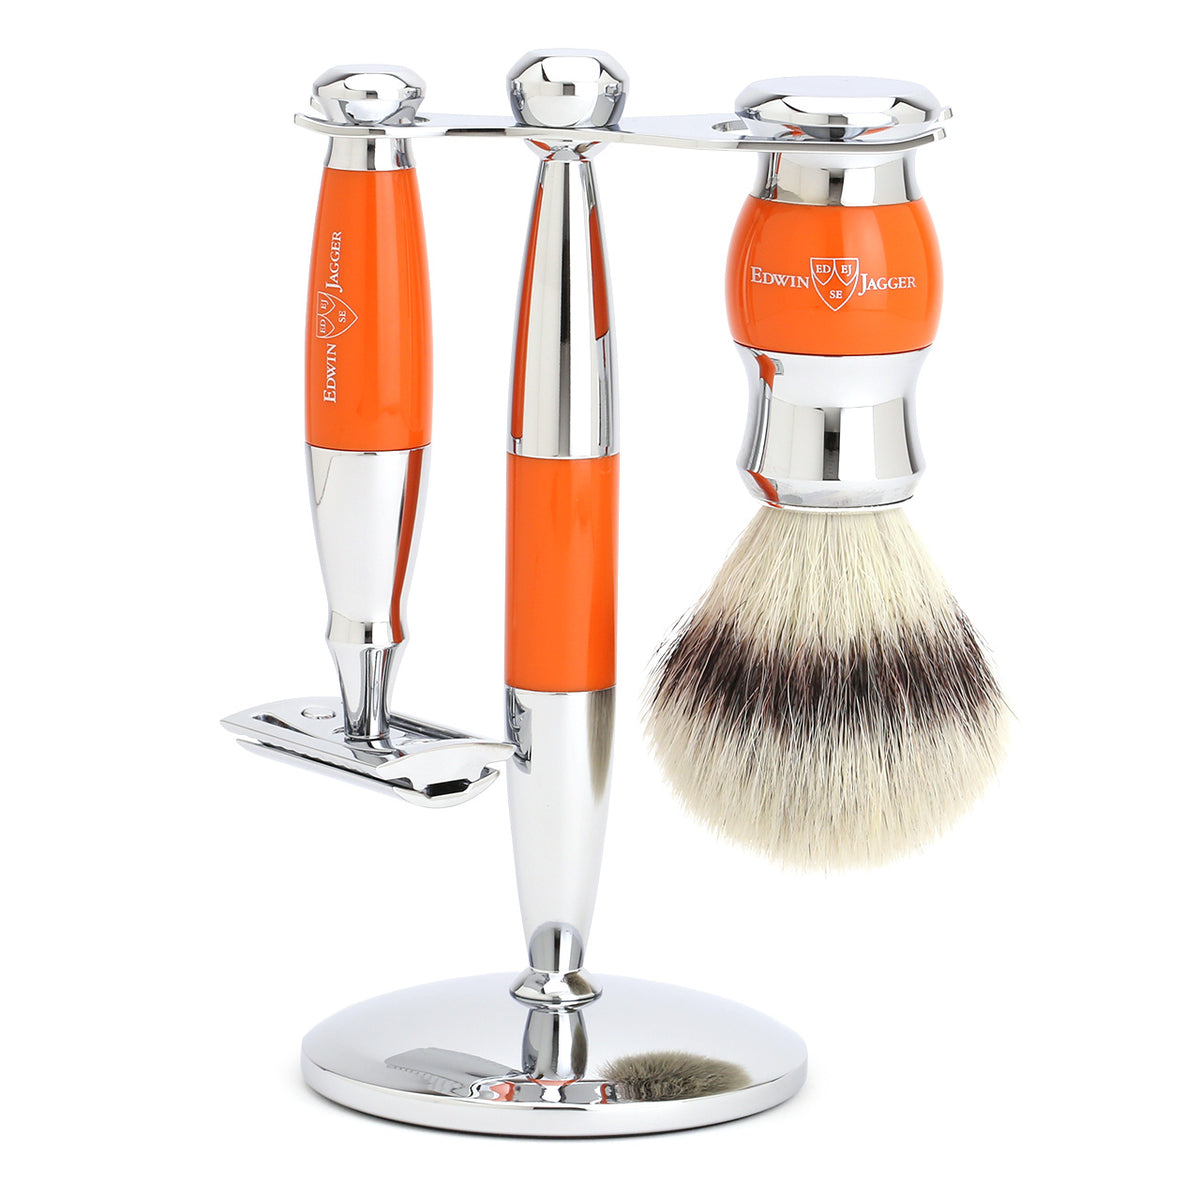 Edwin Jagger Shaving Set with Safety Razor, Shaving Brush and Stand - Orange